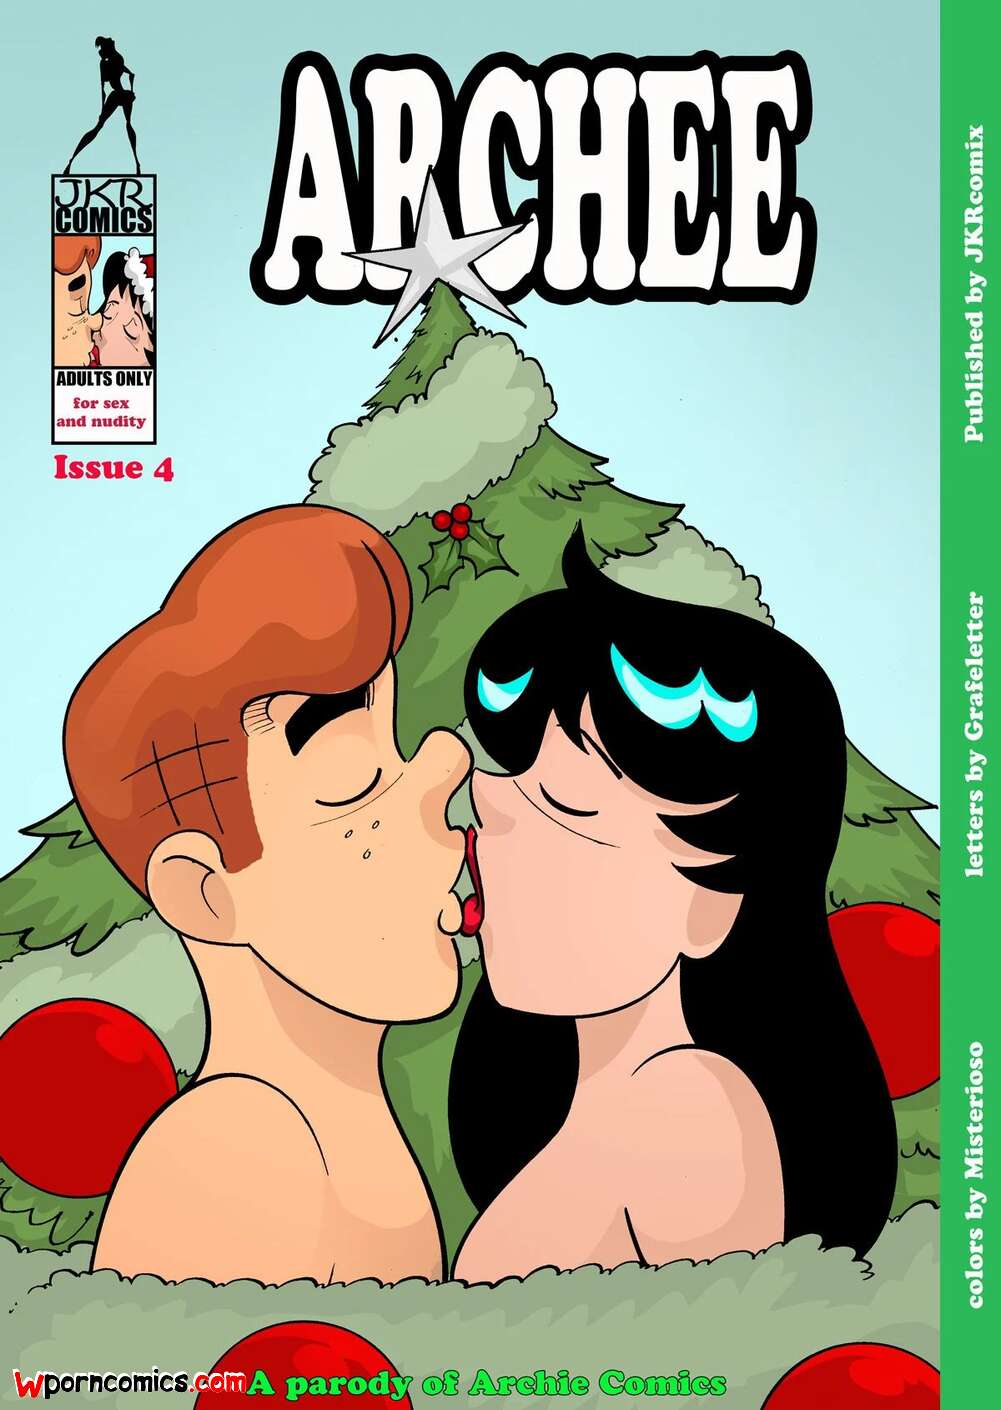 âœ…ï¸ Porn comic Archee. Chapter 4. Archies. JKRComix. Sex comic family was  celebrating | Porn comics in English for adults only | sexkomix2.com